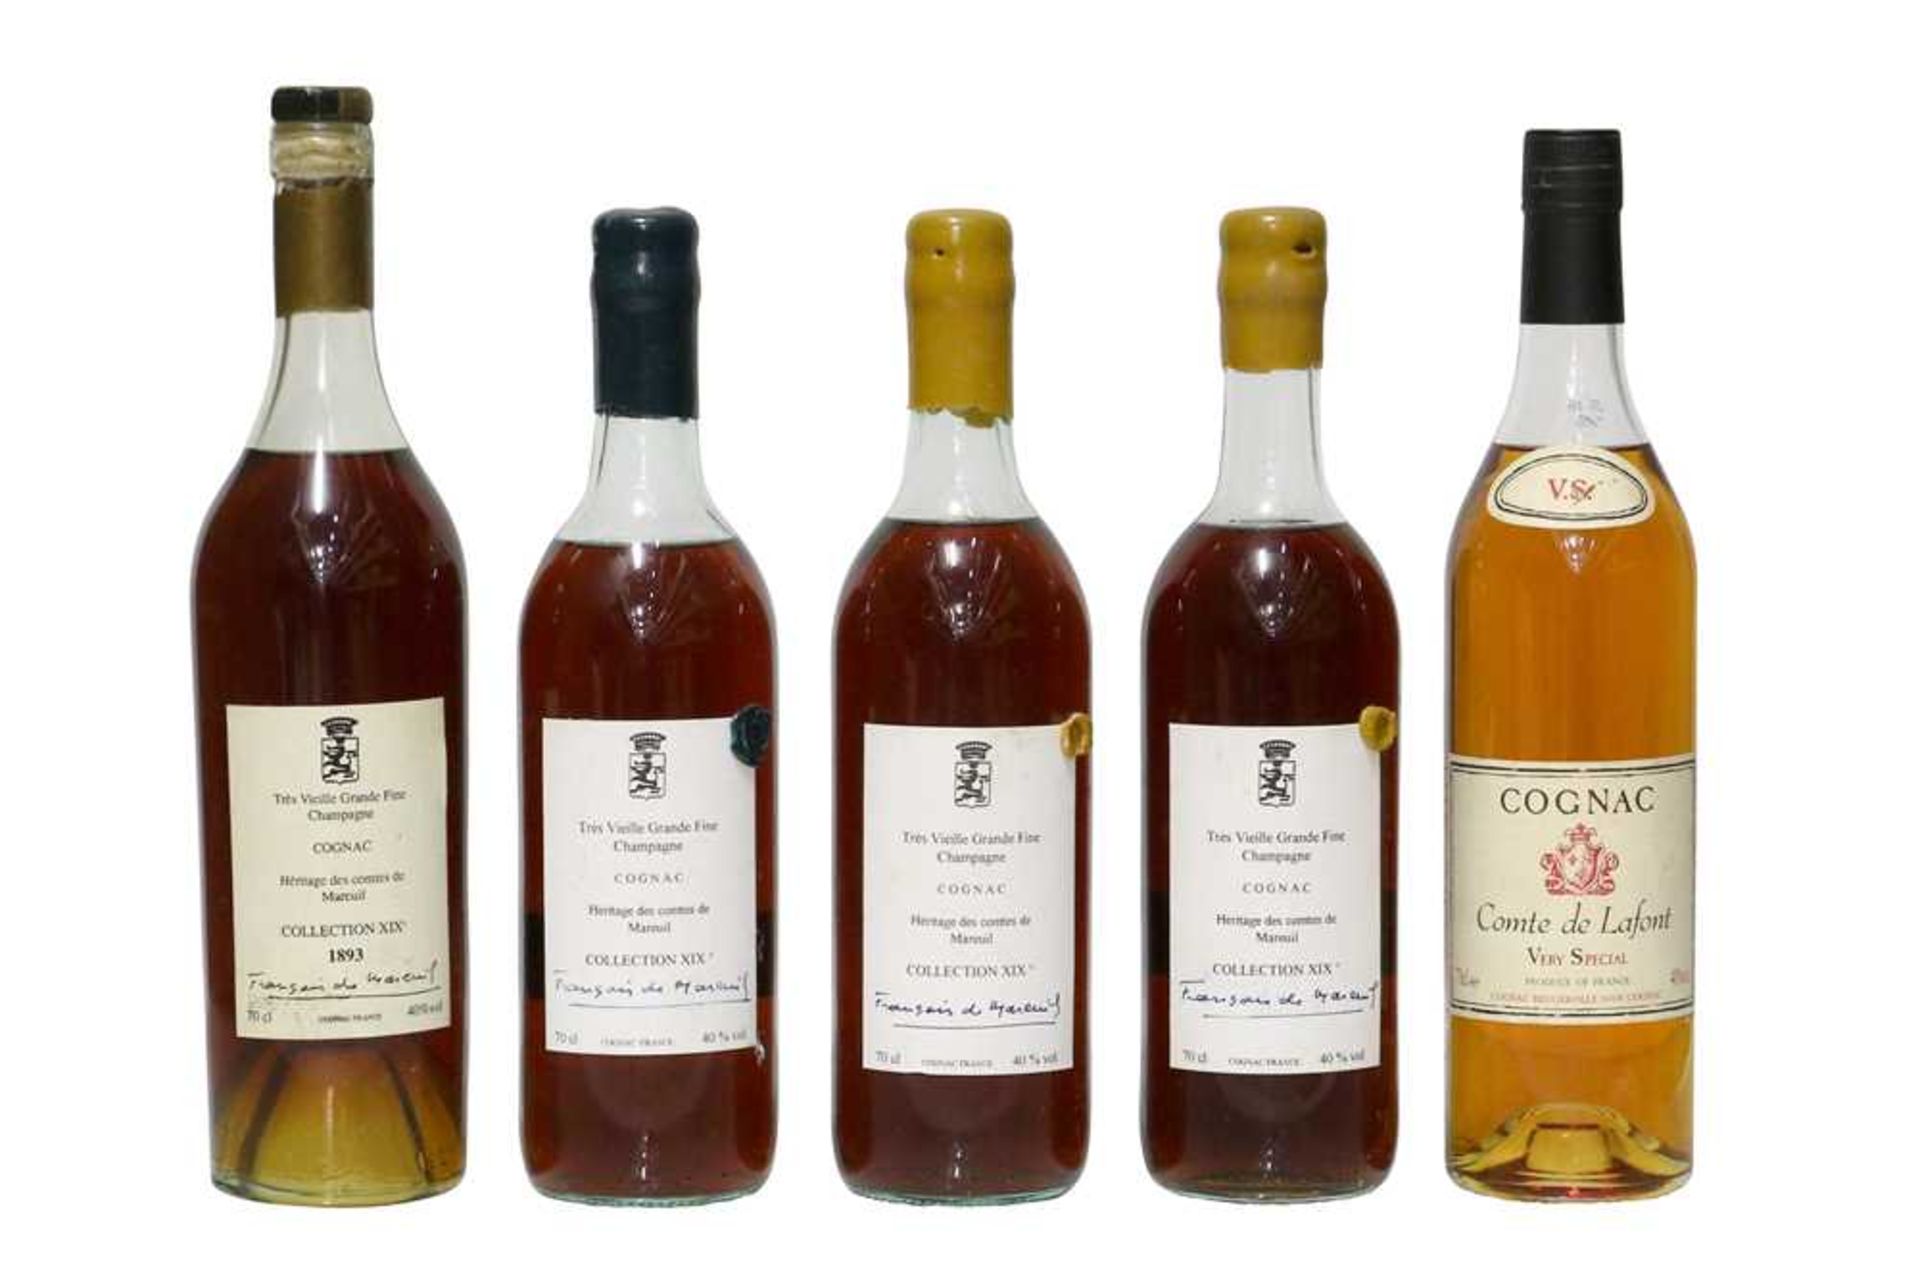 Heritage des Comtes de Mareuil, Tres Vieille Grande Fine Champagne Cognac, Collection XIX